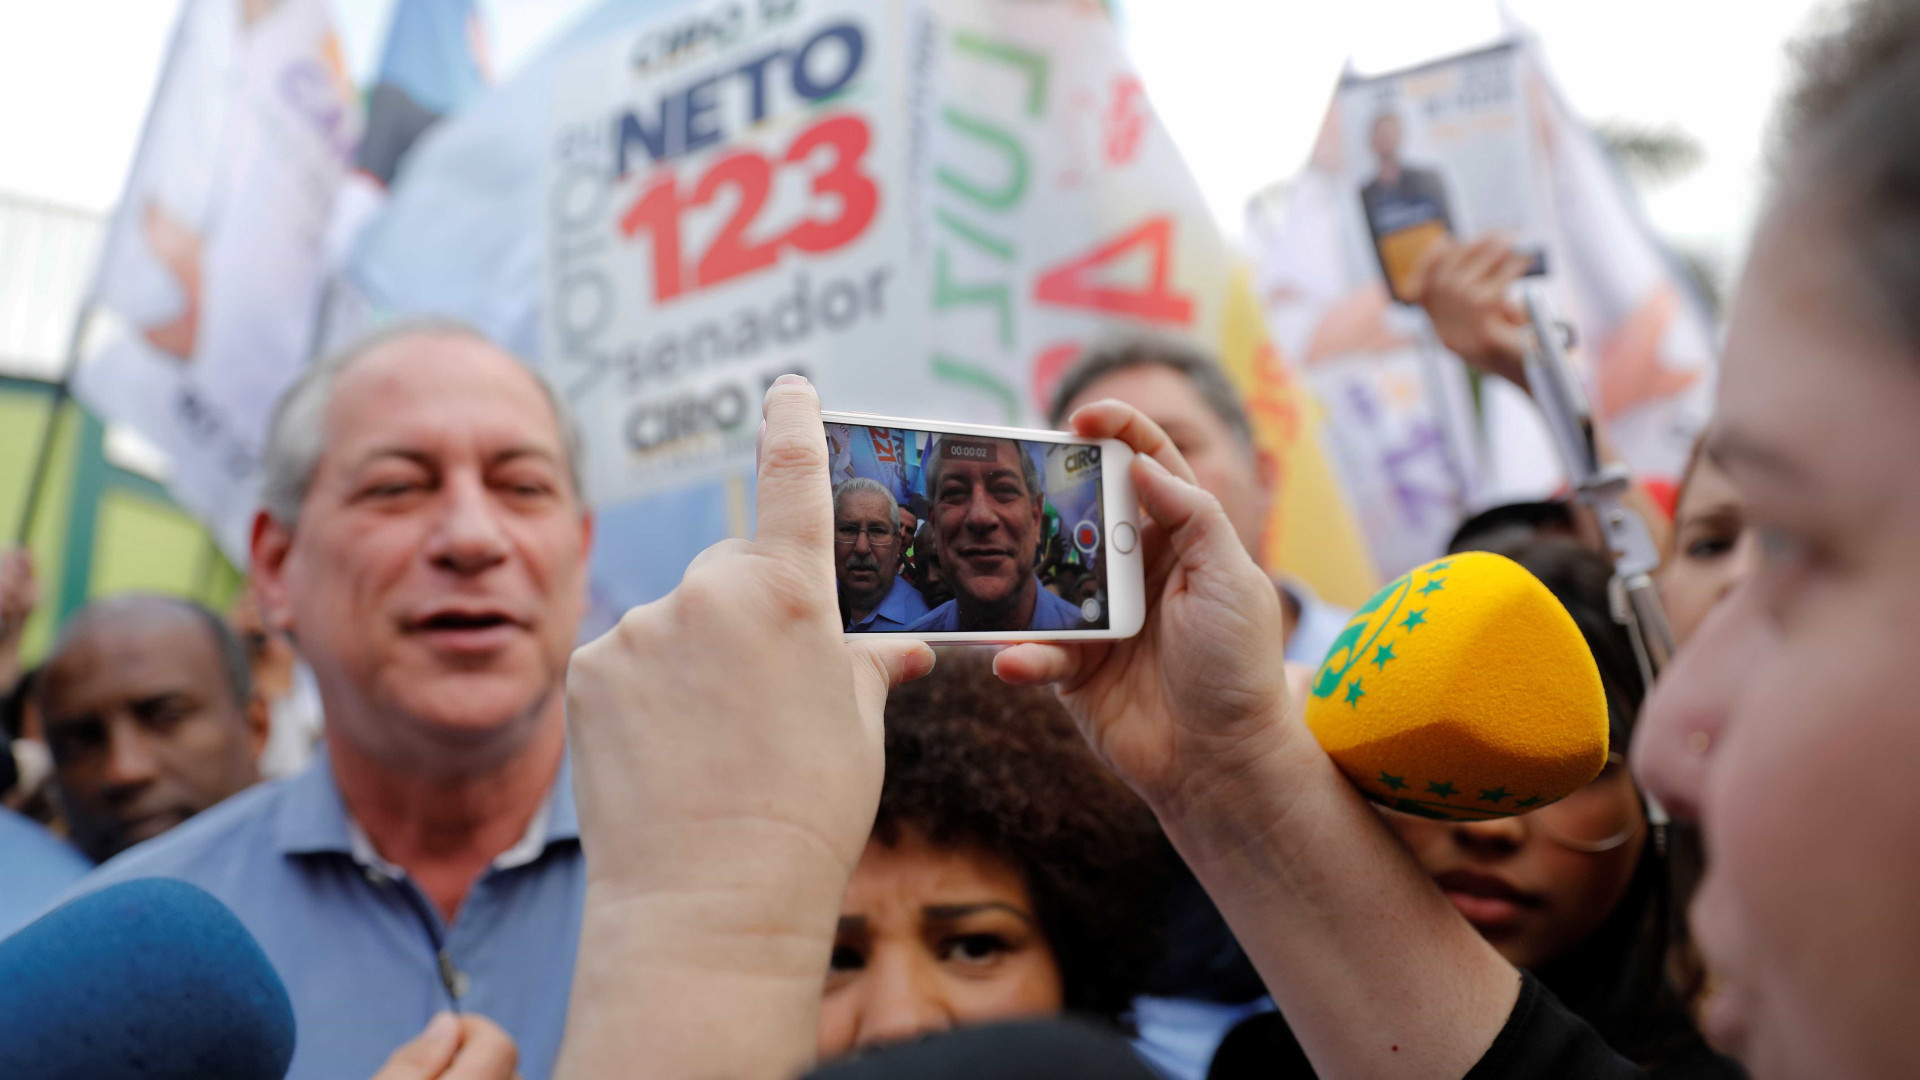 Em campanha em SP, Ciro diz que só quer unir o Brasil 'que é decente'